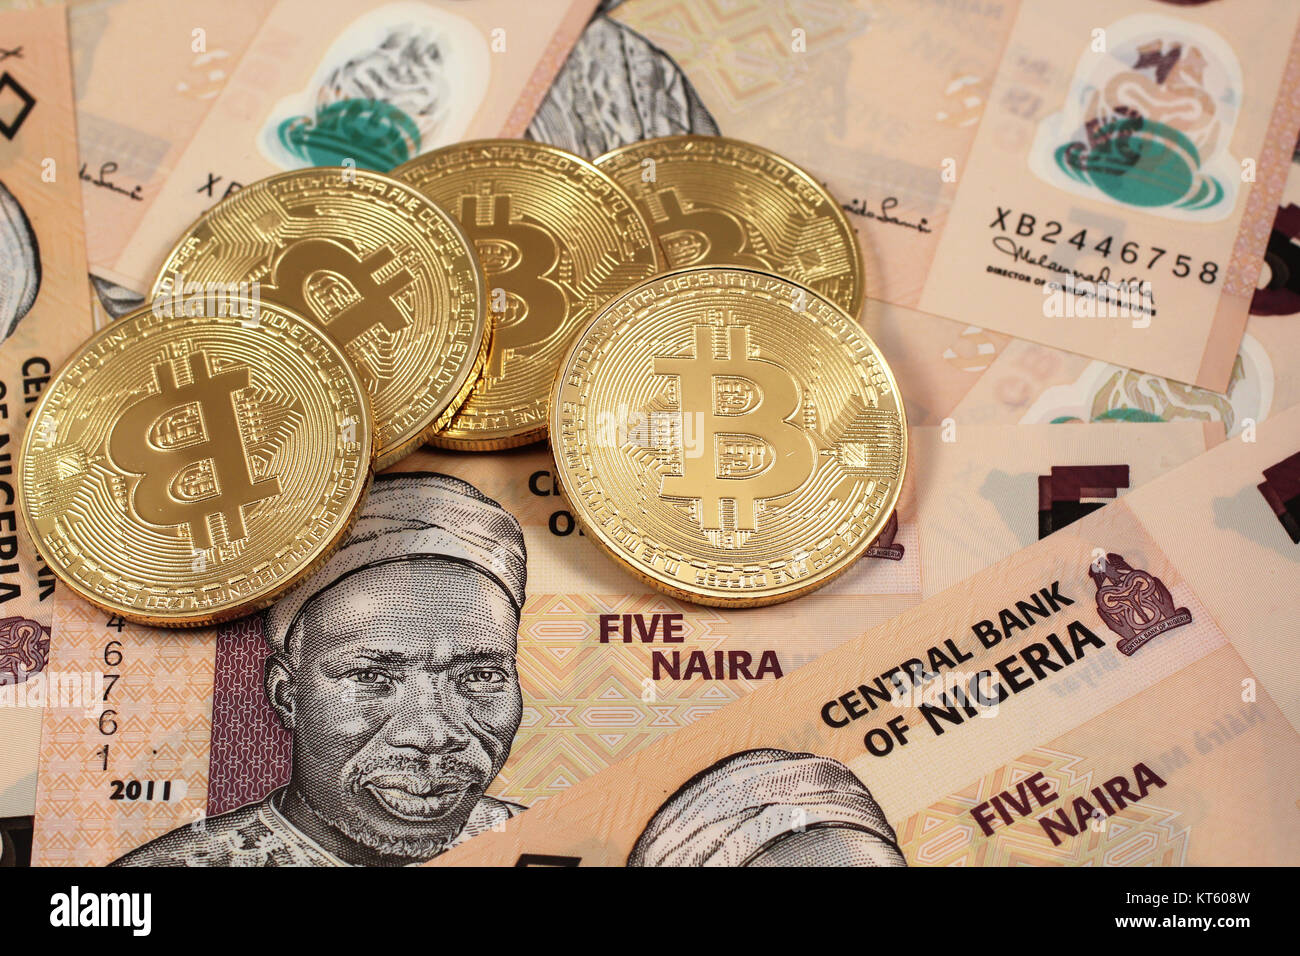 0.076 bitcoin to naira